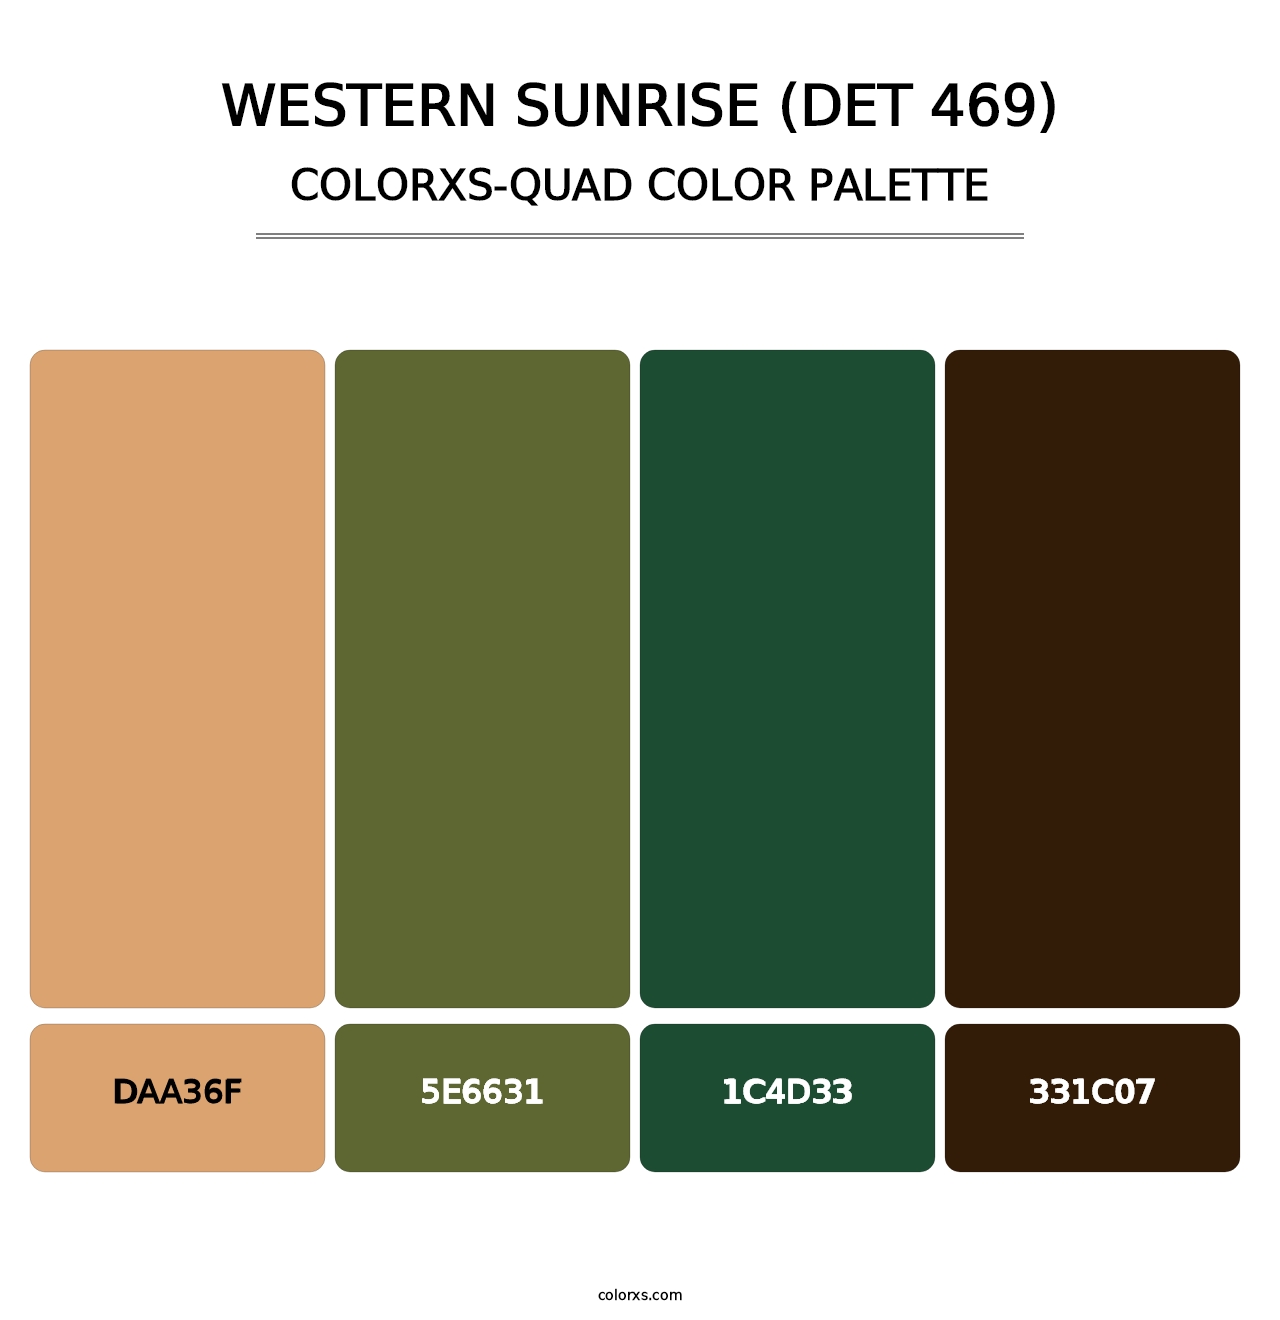 Western Sunrise (DET 469) - Colorxs Quad Palette